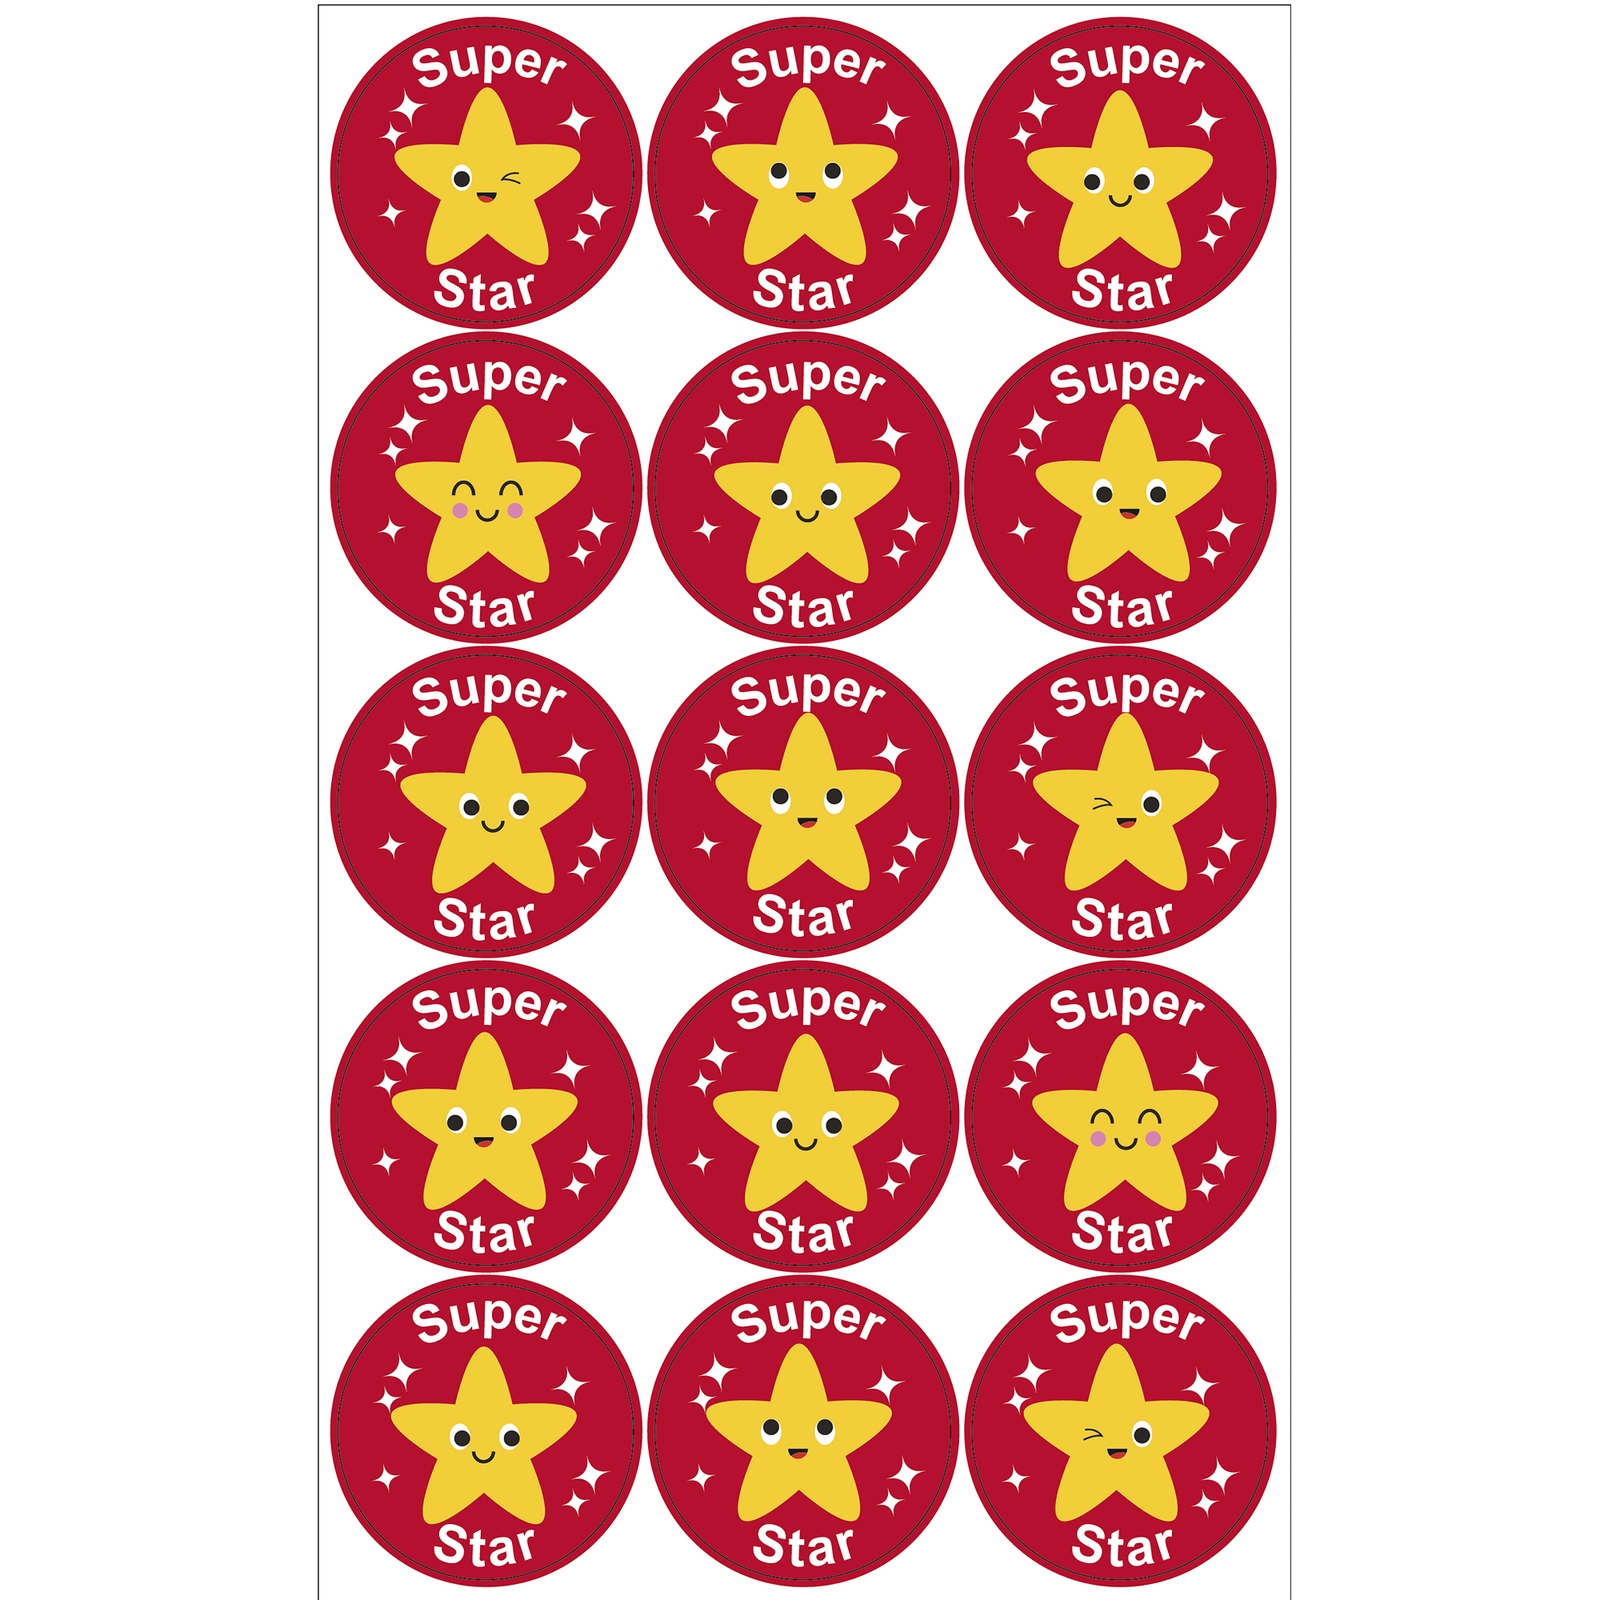 Round Super Star Stickers 38mm.